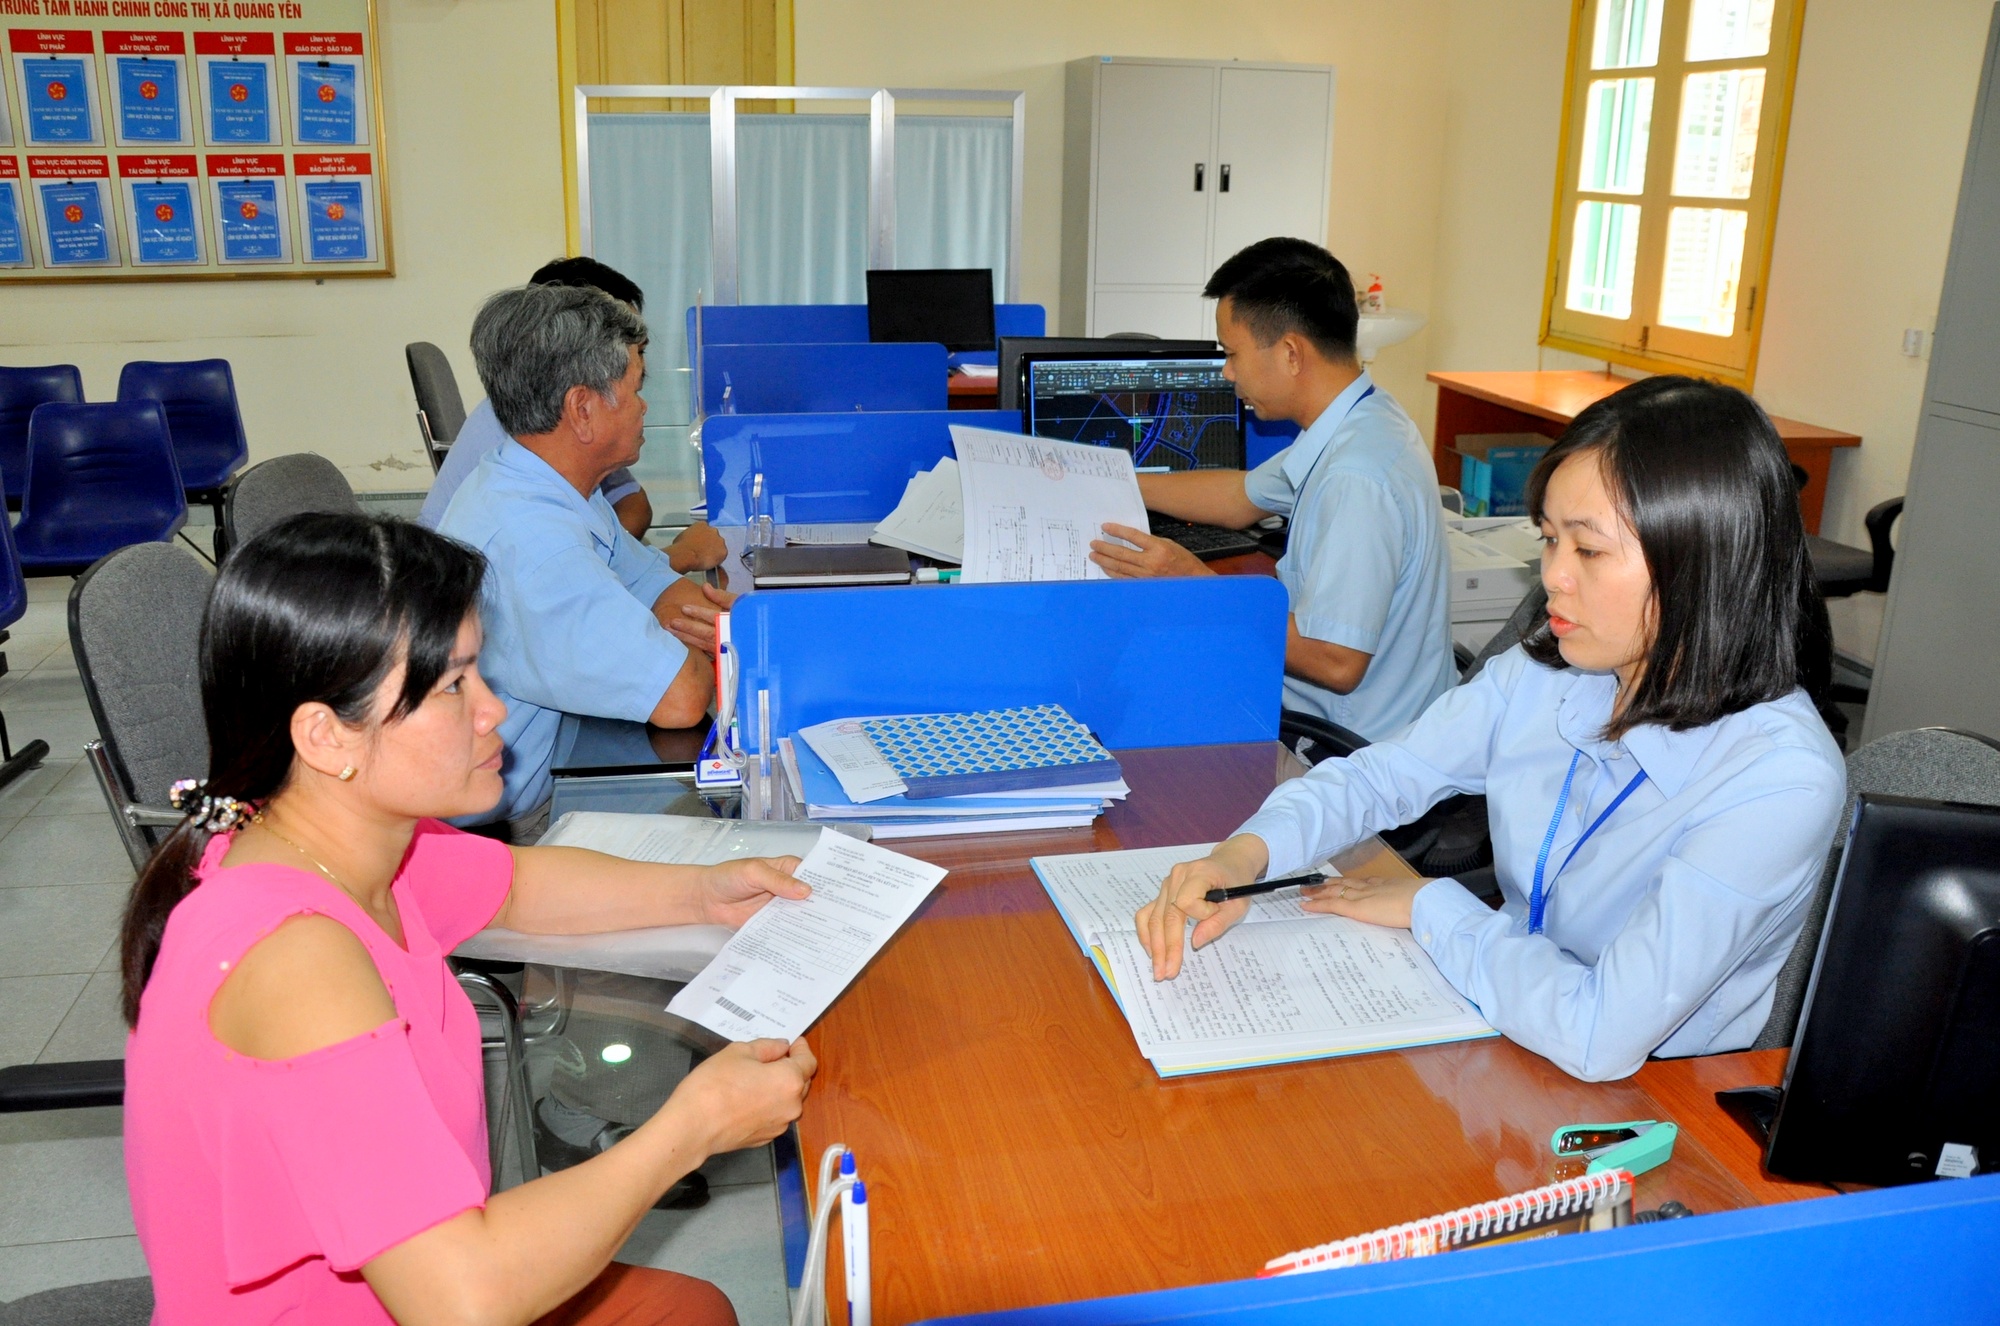 Cán bộ Trung tâm Hành chính công thị xã Quảng Yên tận tình hướng dẫn người dân, doanh nghiệp đến làm việc tại Trung tâm.